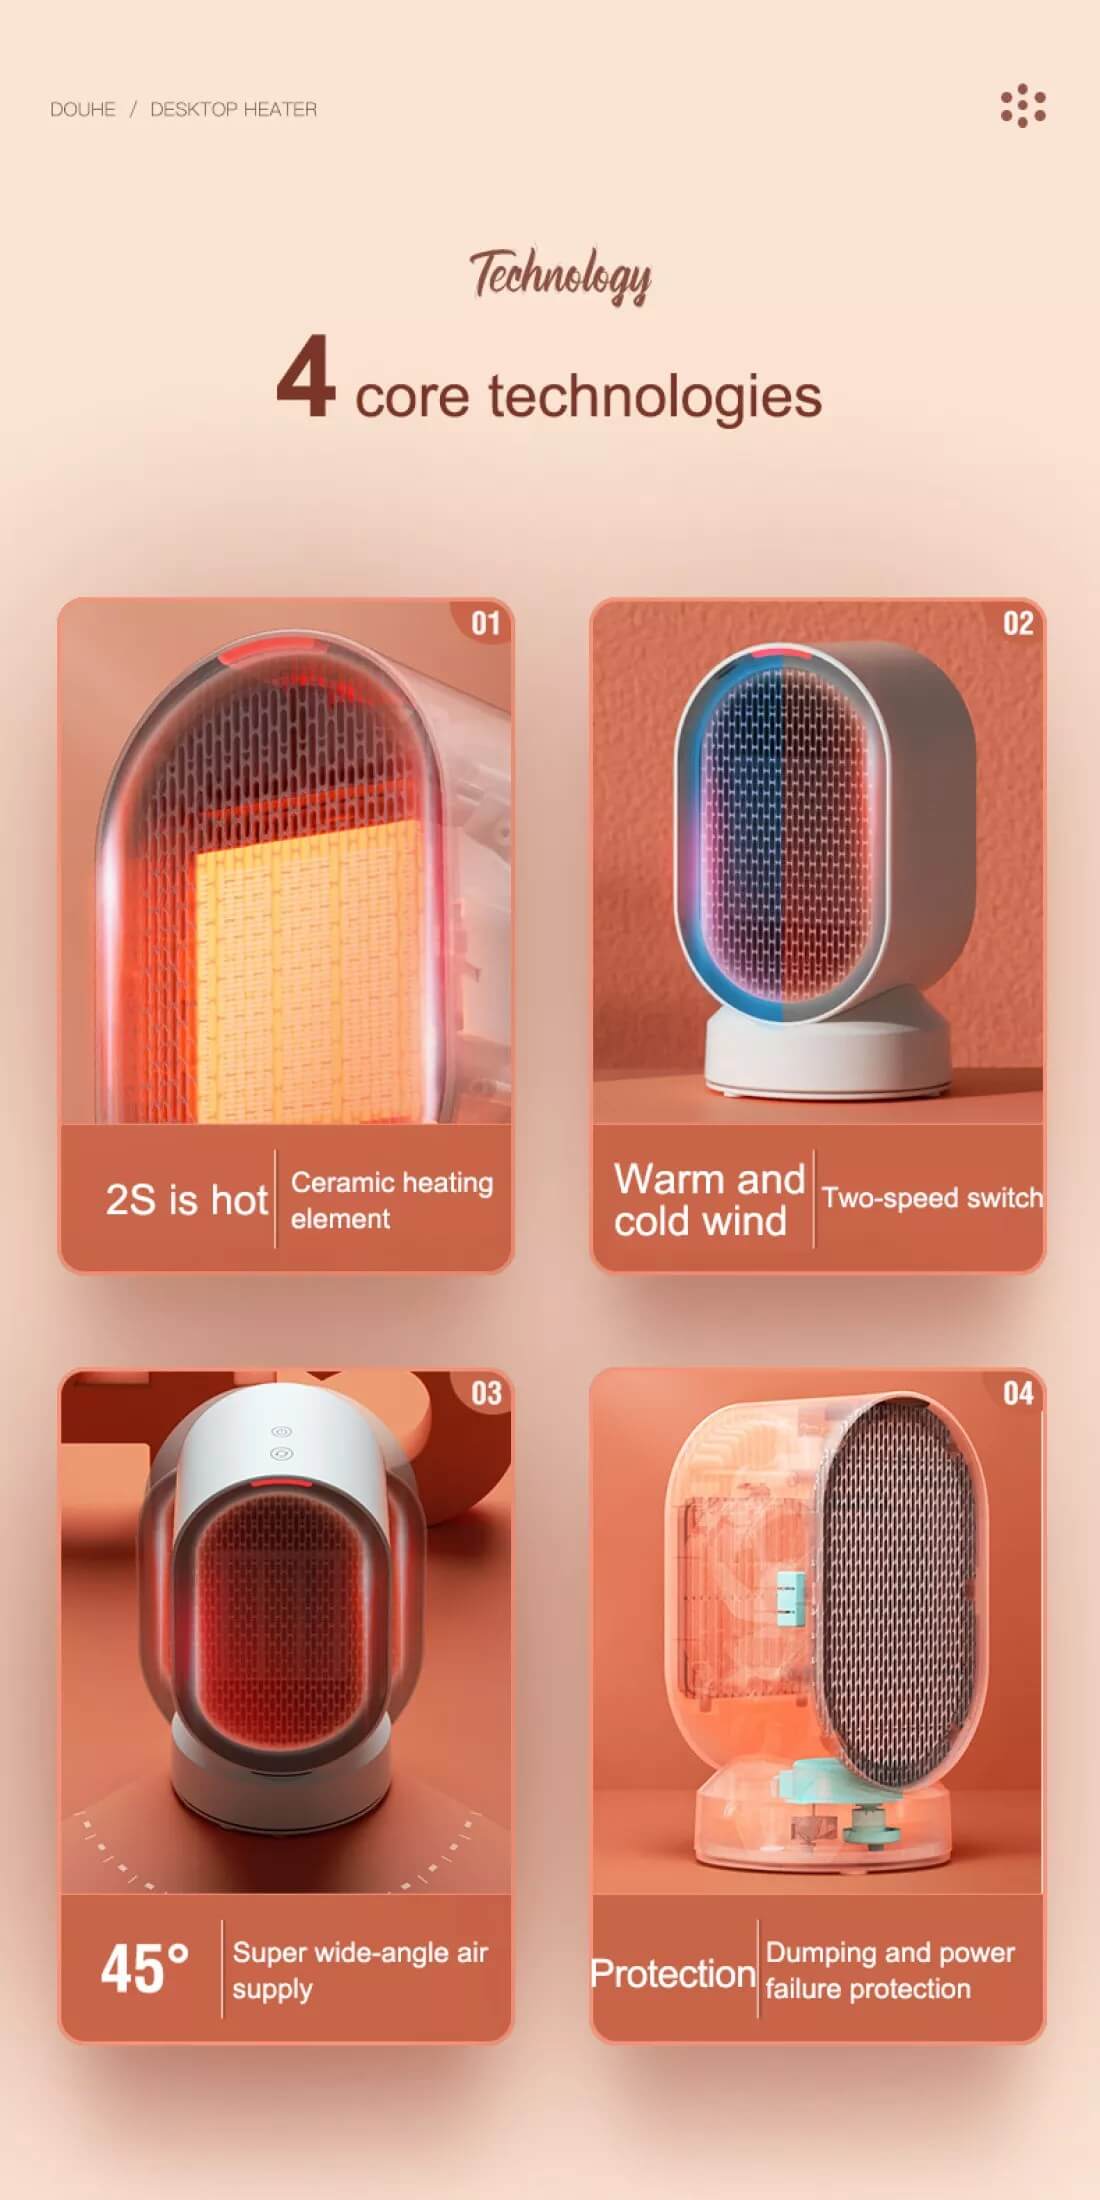 Xiaomi-Douhe-Electric-Heater-600w